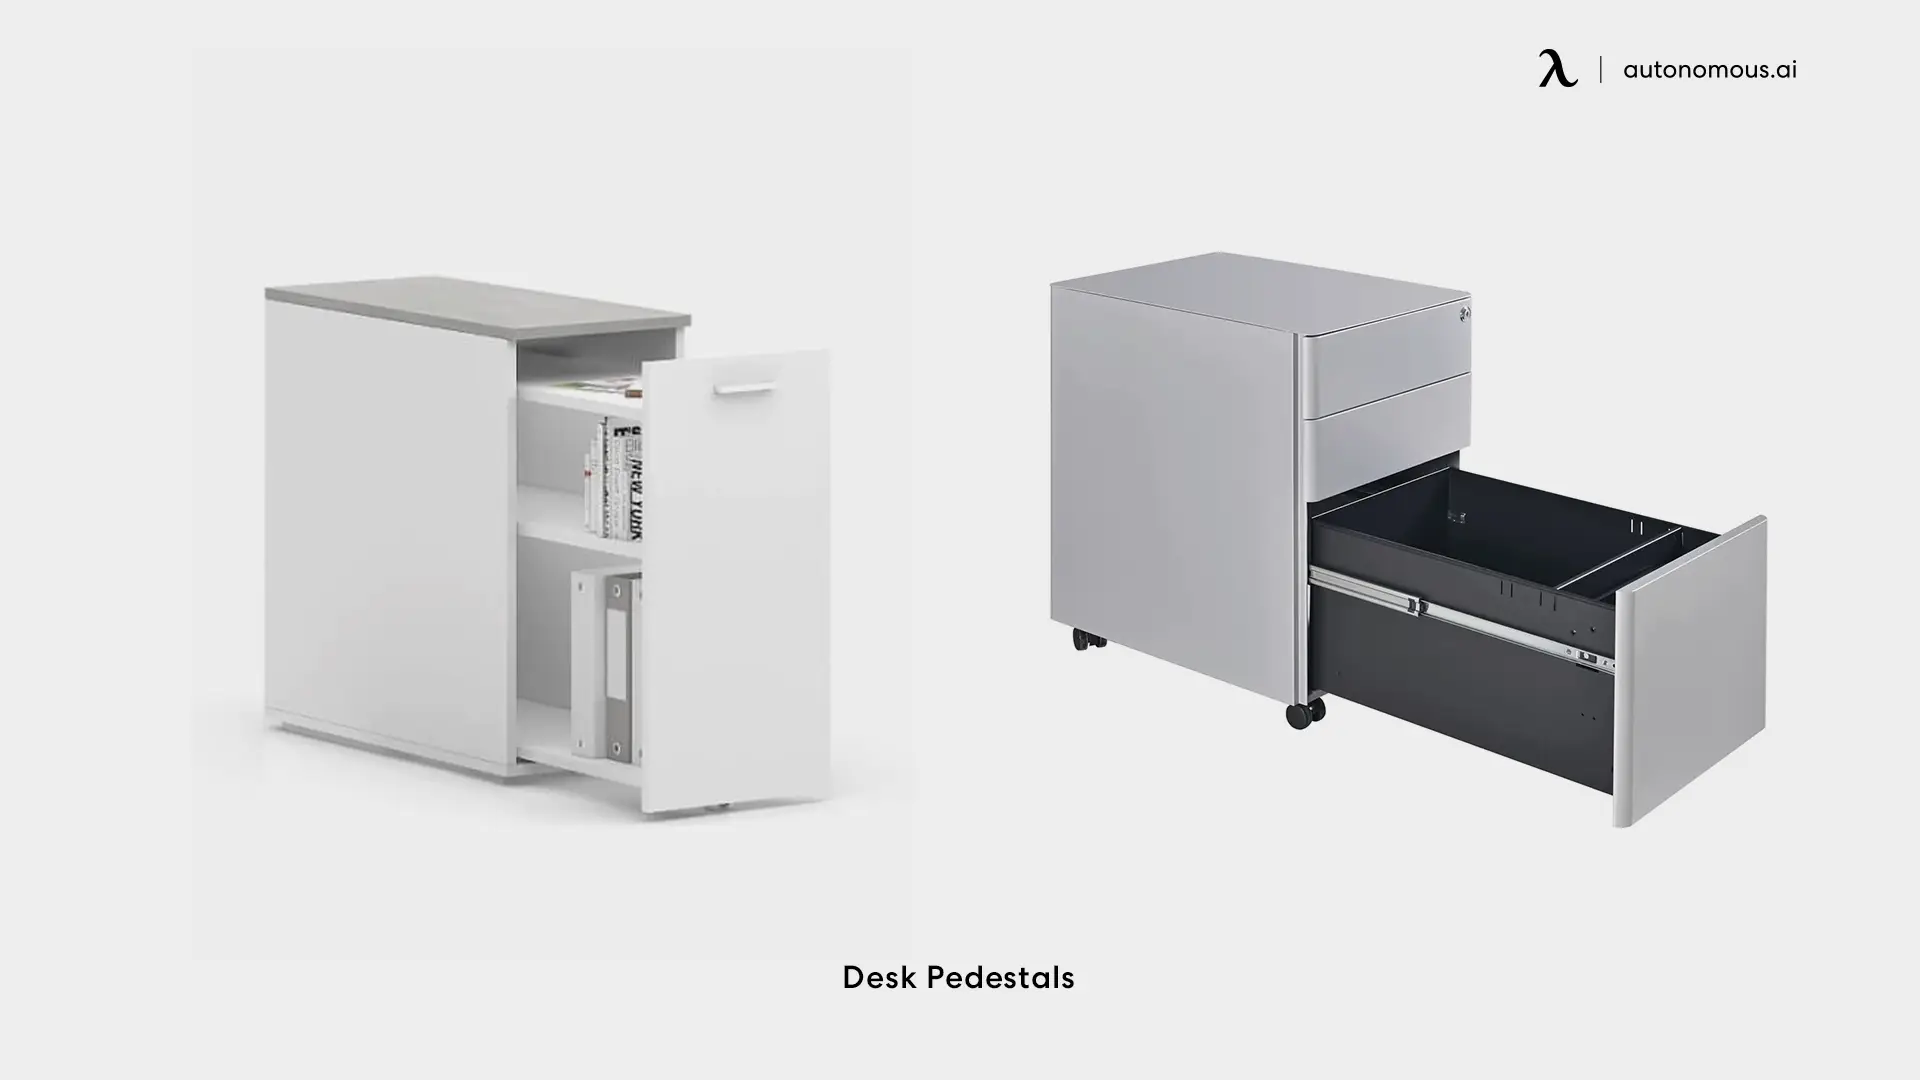 Desk Pedestals - standing desk storage